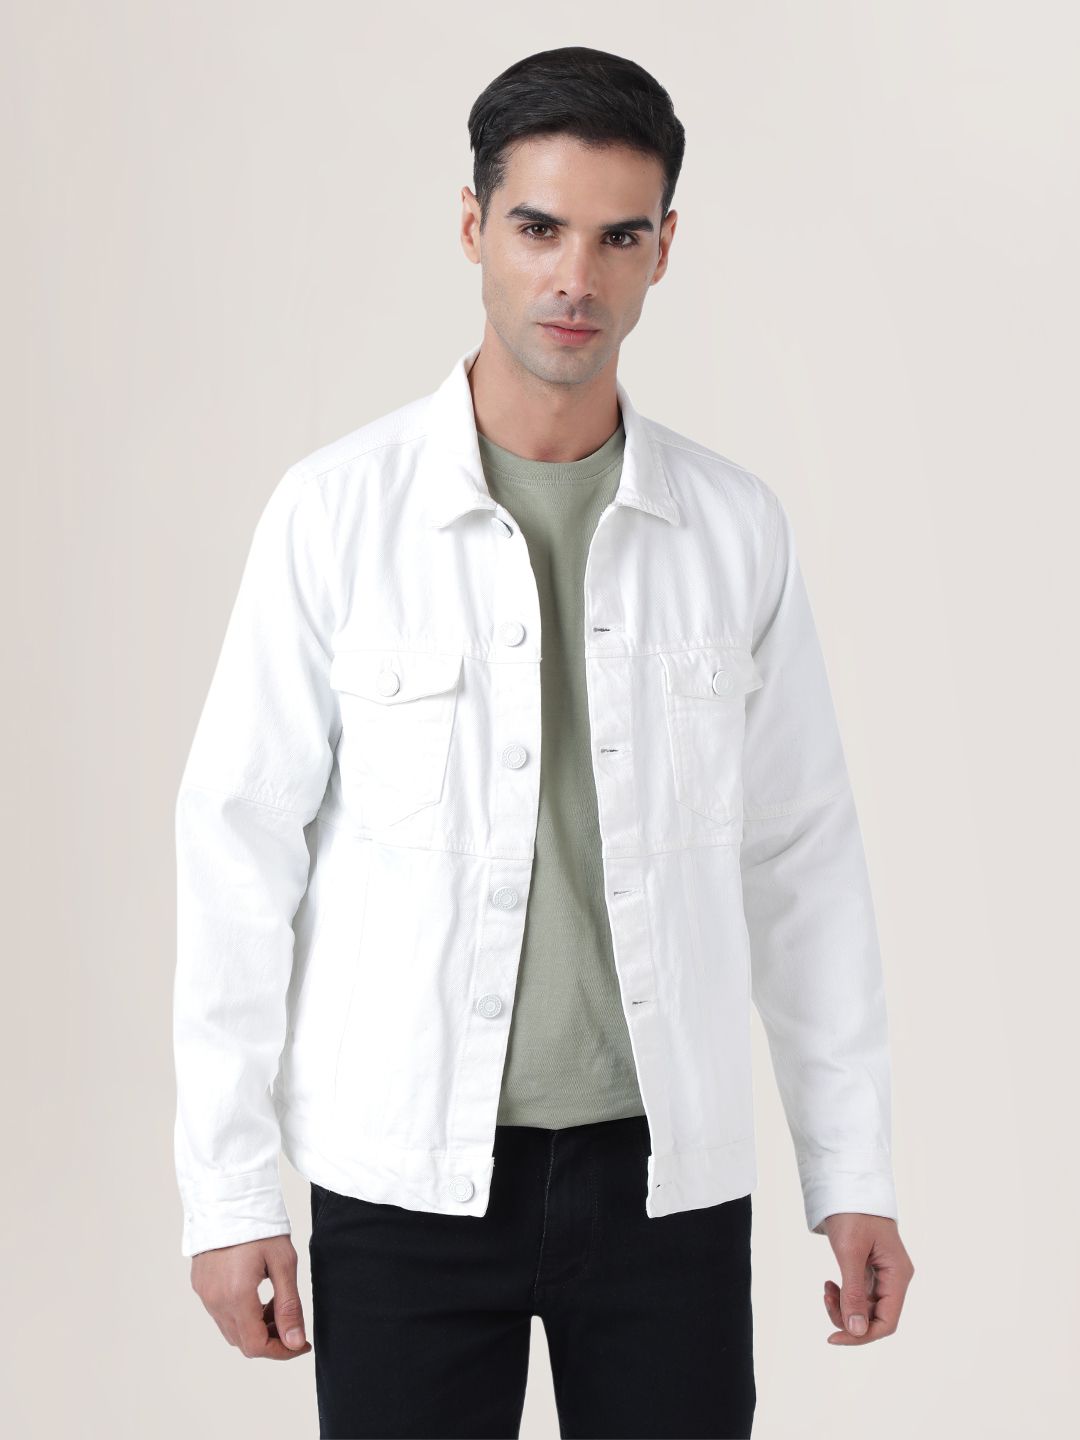     			Bene Kleed Cotton Men's Denim Jacket - White ( Pack of 1 )